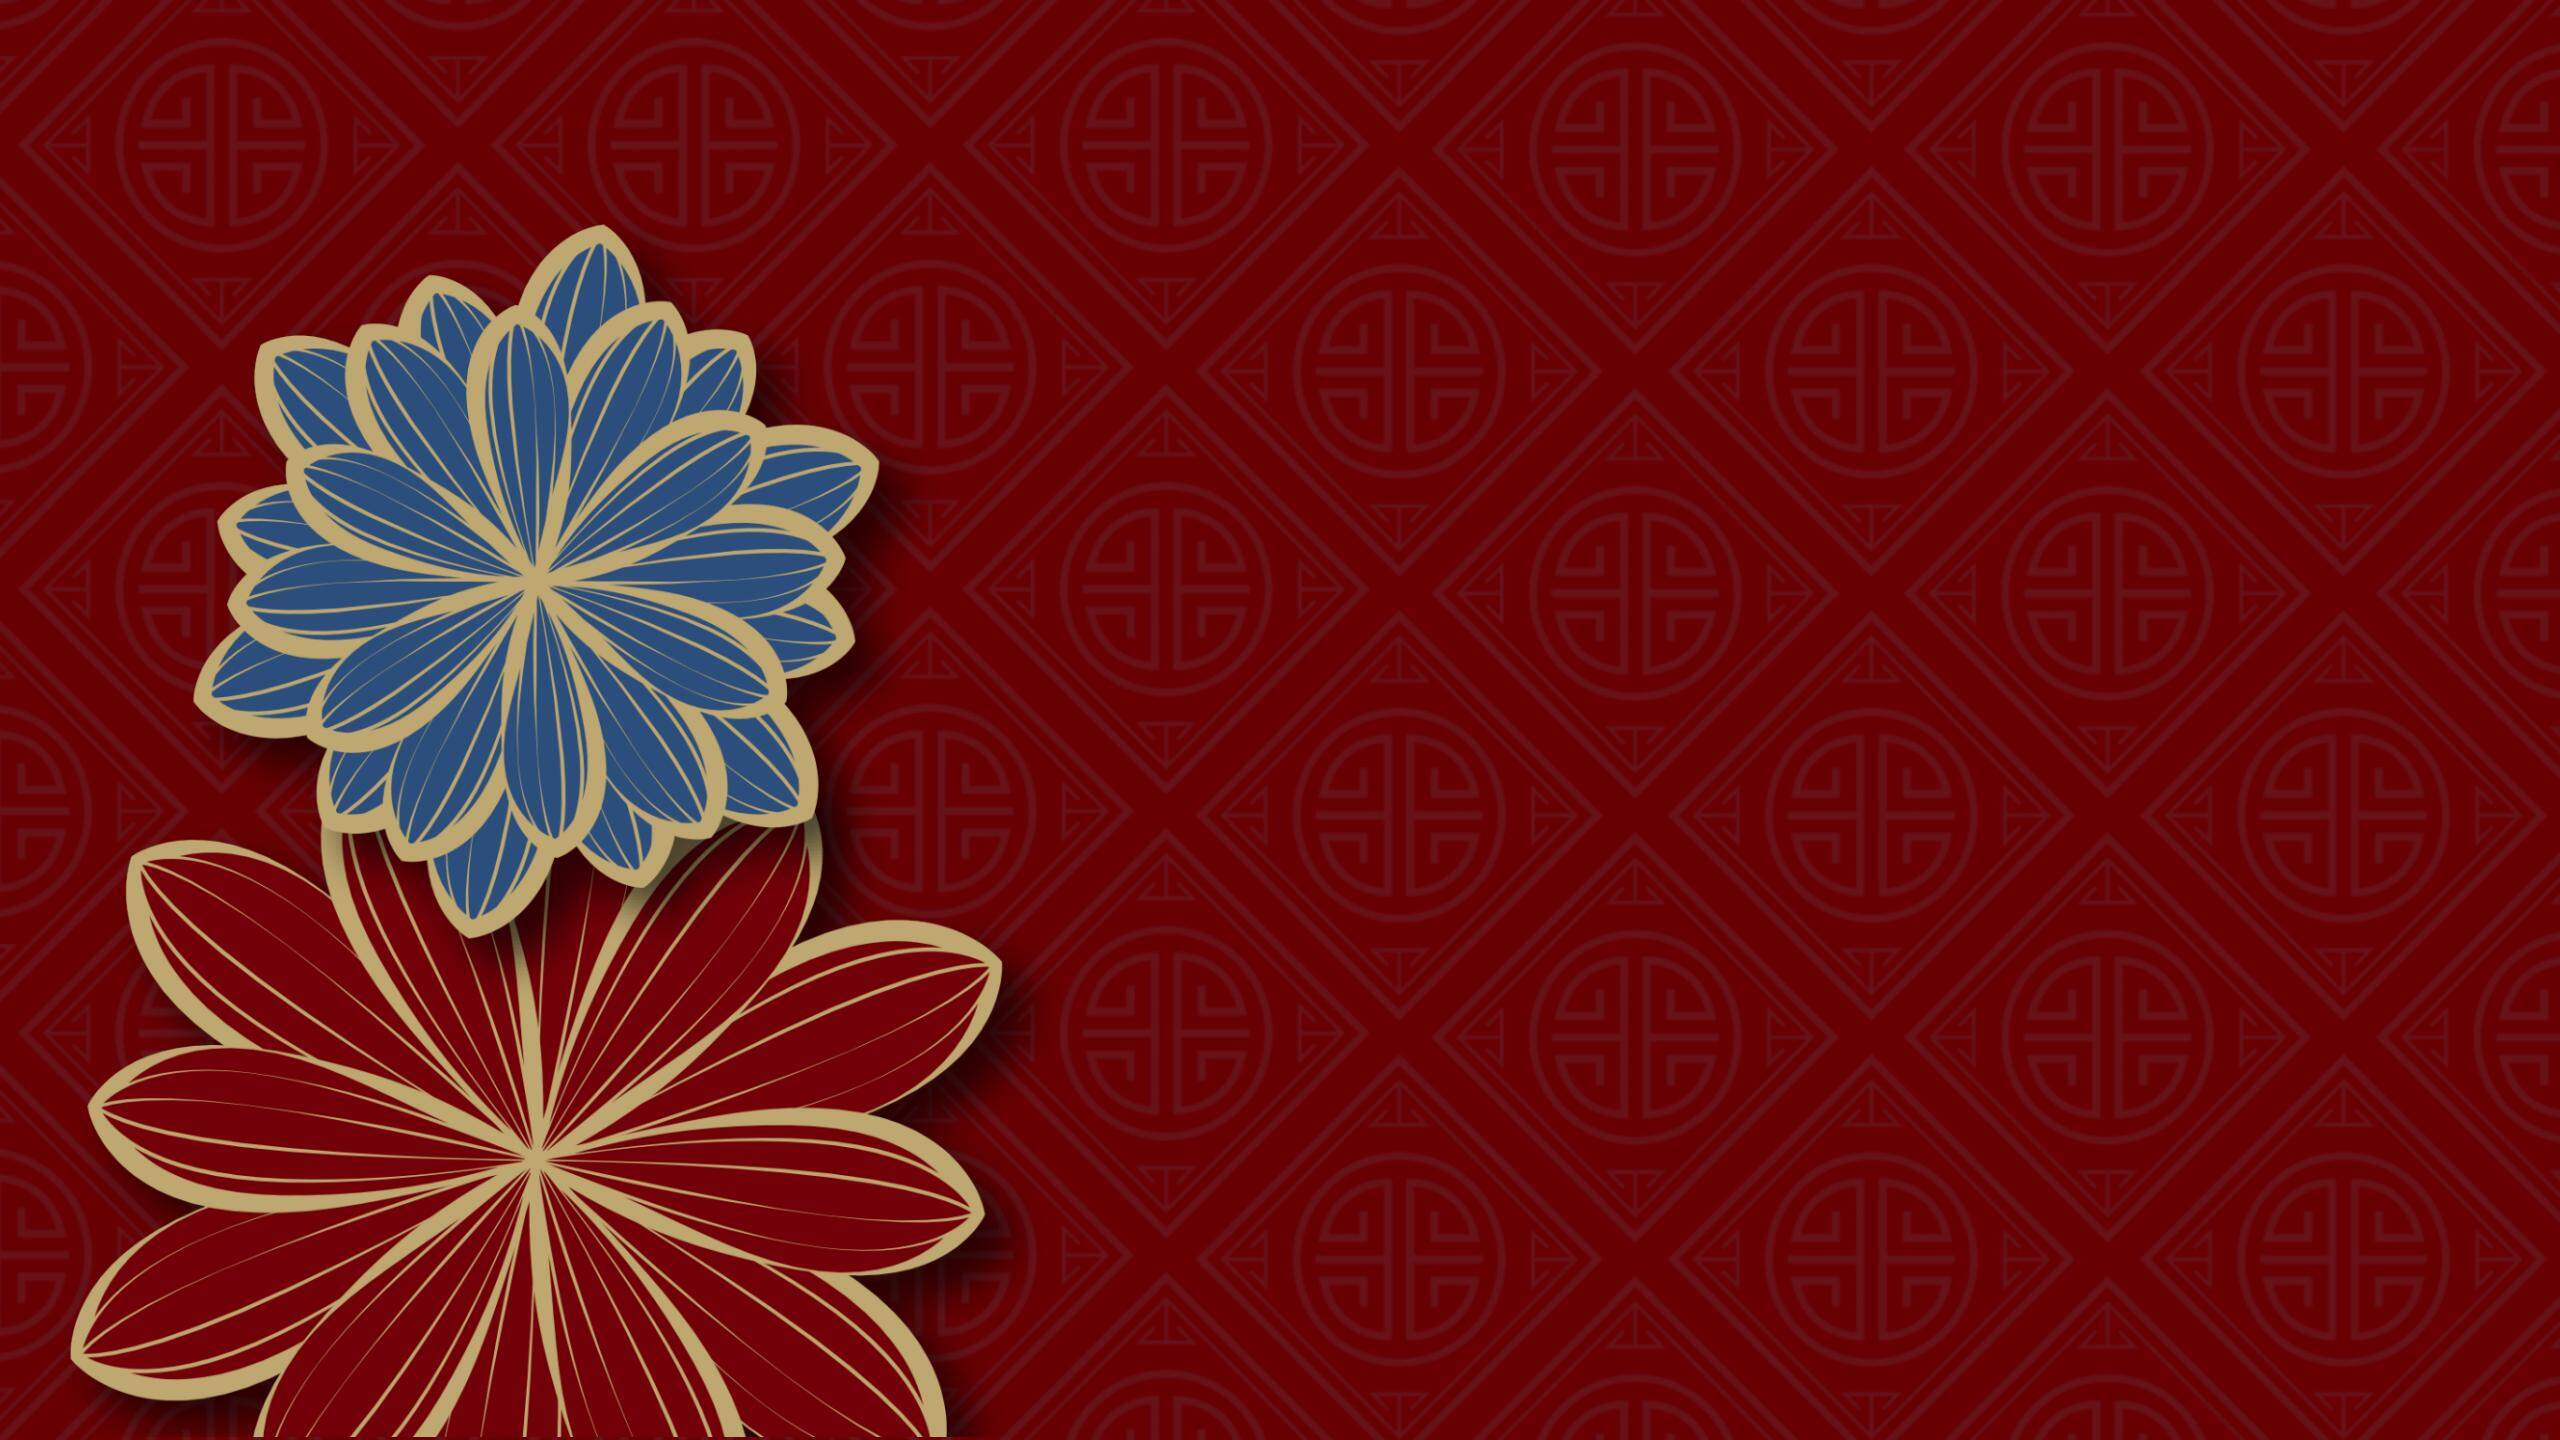 6张红蓝配色的古典花朵图案PPT背景图片